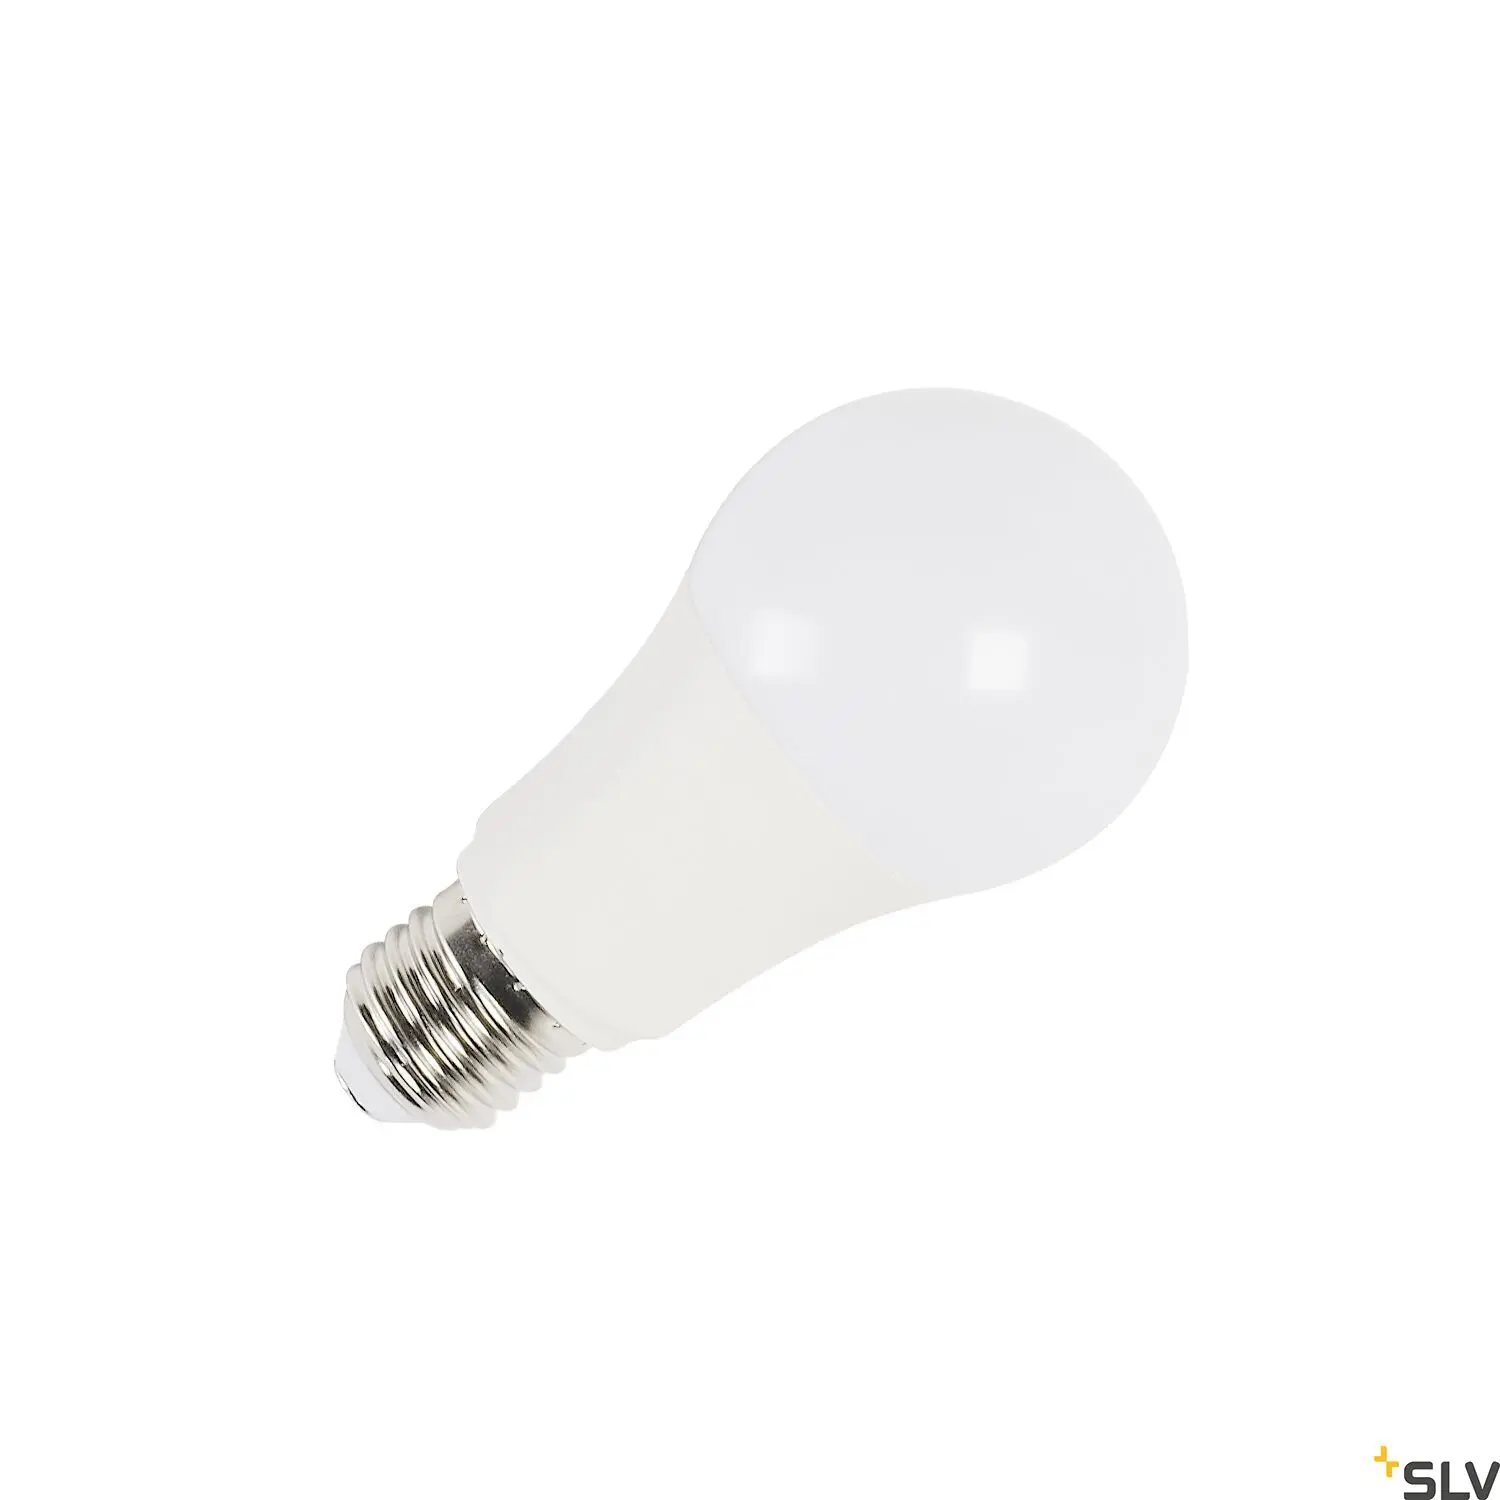 SLV Lampe A60 E27 tunable smart Zigbee 9W 2700-6500K